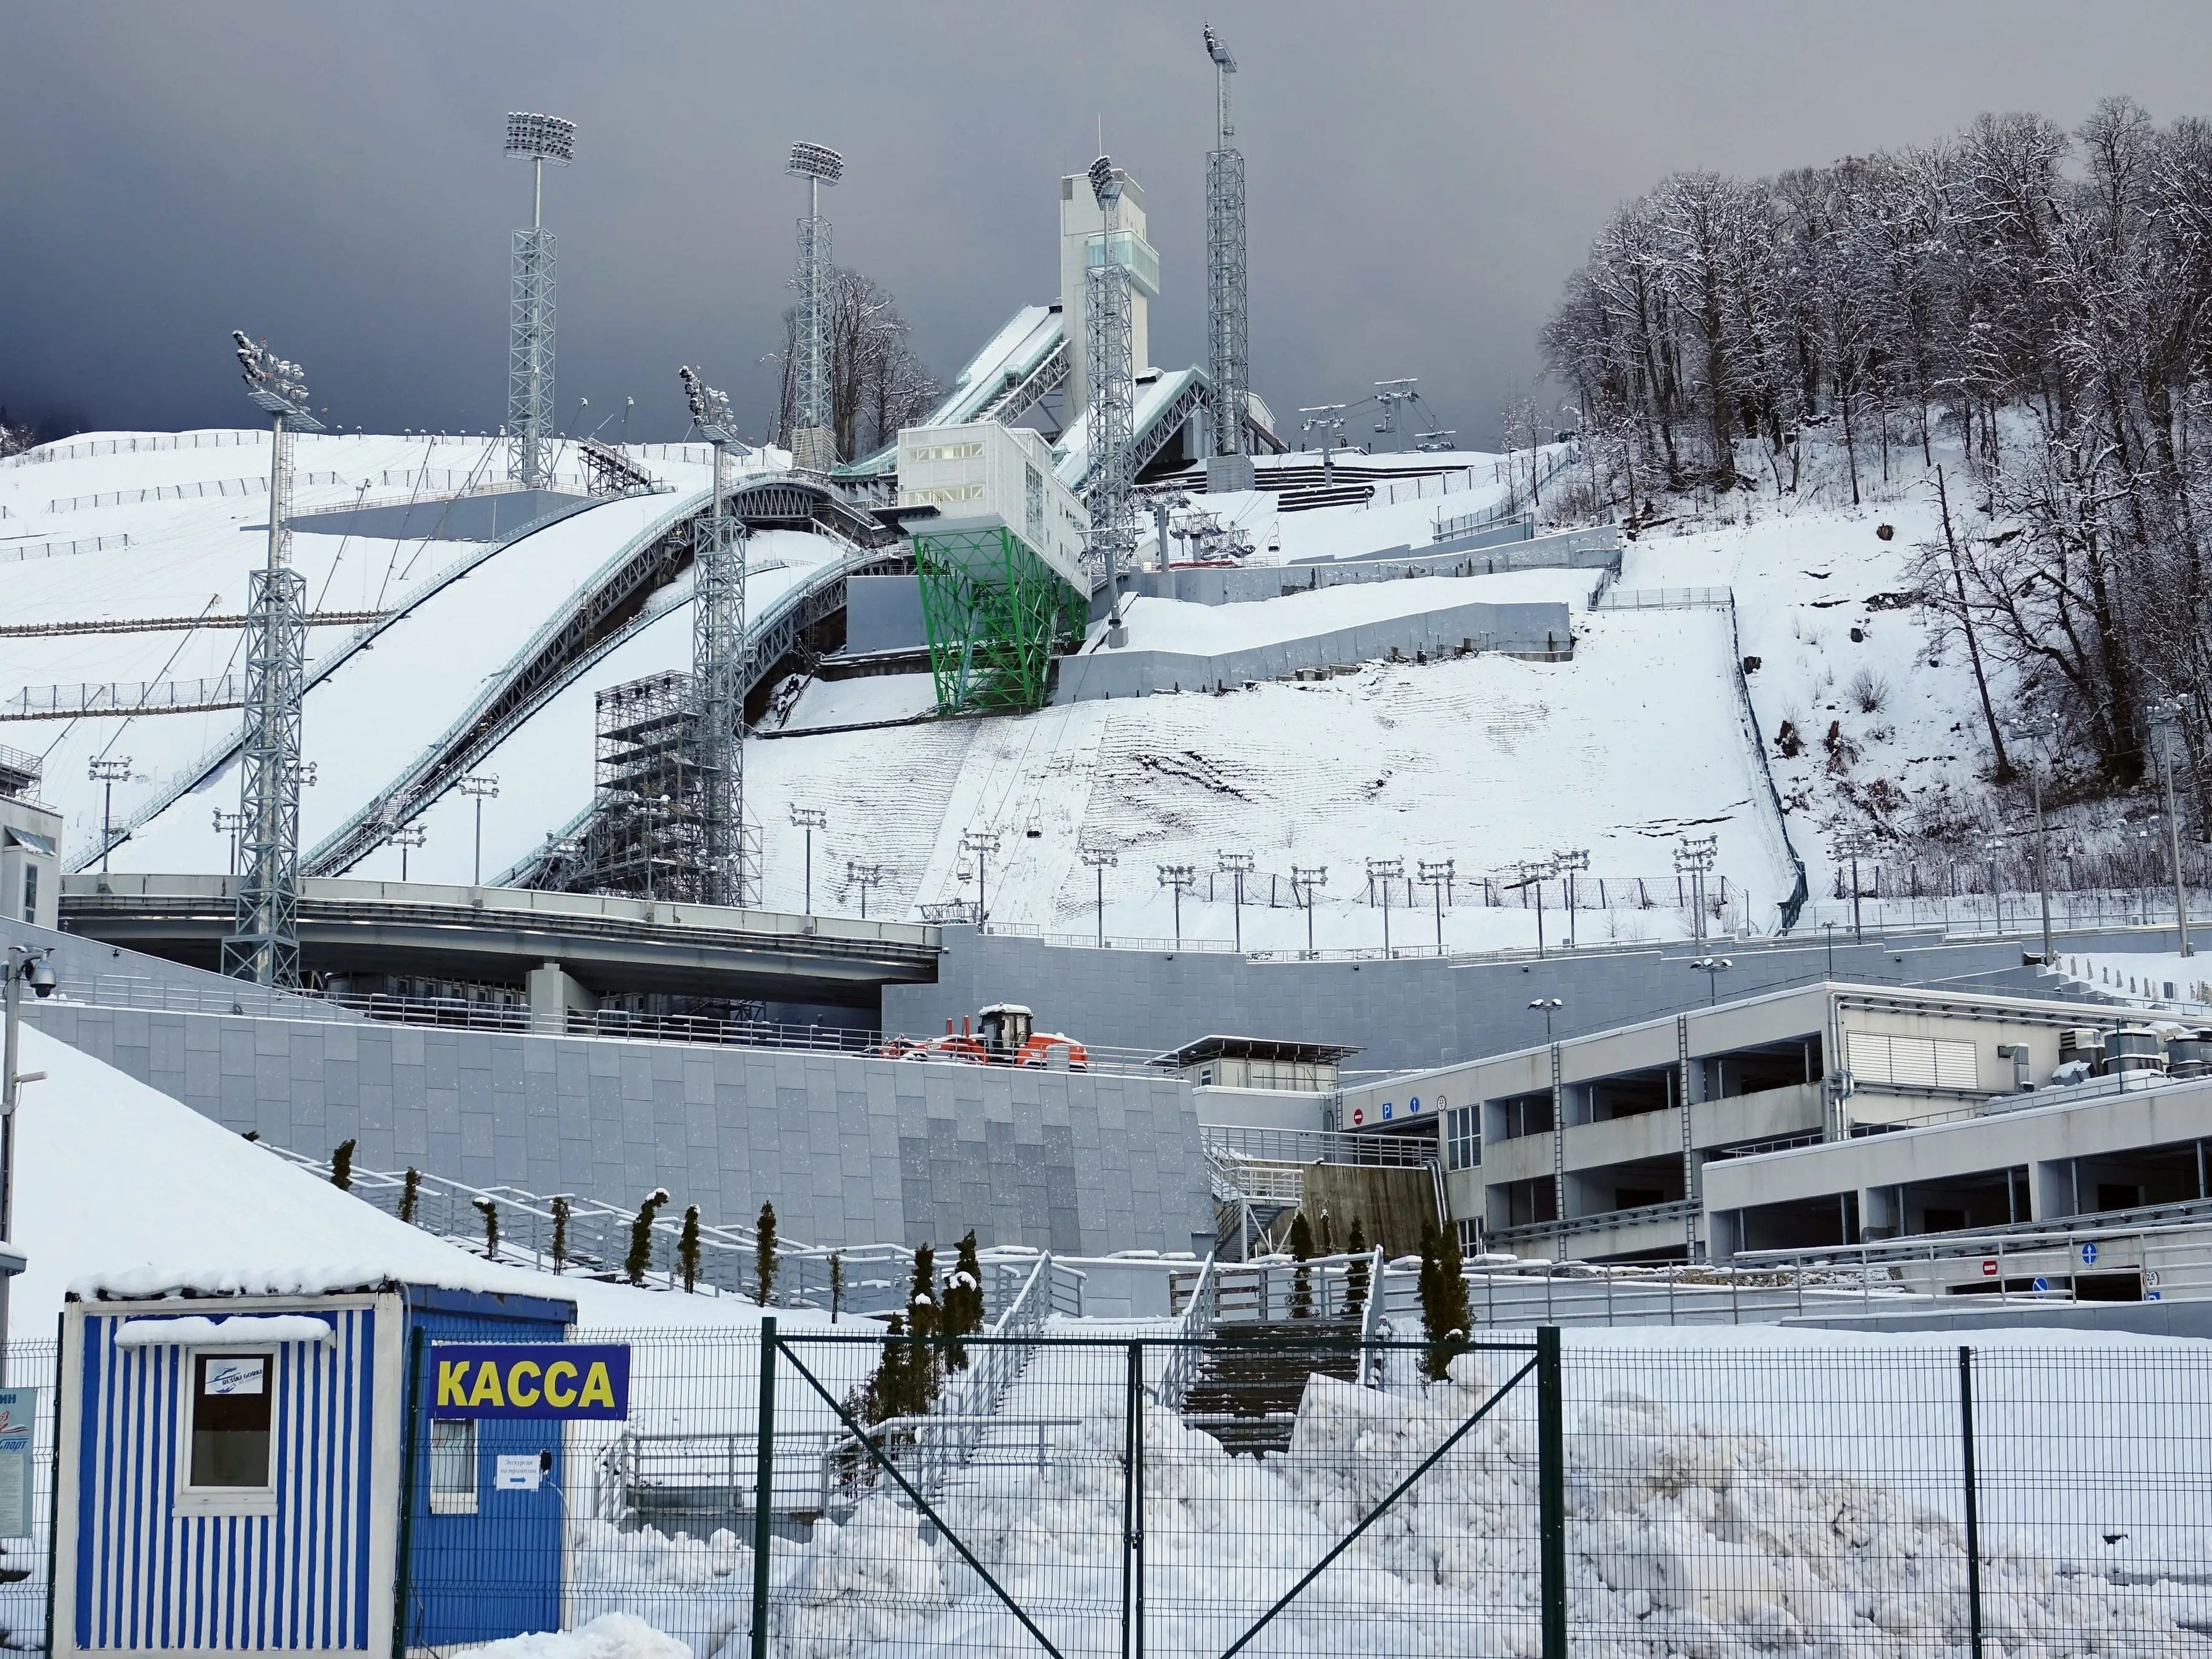 Vista de los saltos de esquí de los Juegos Olímpicos de Invierno de 2014 en Sochi, Rusia, el 31 de enero de 2018.